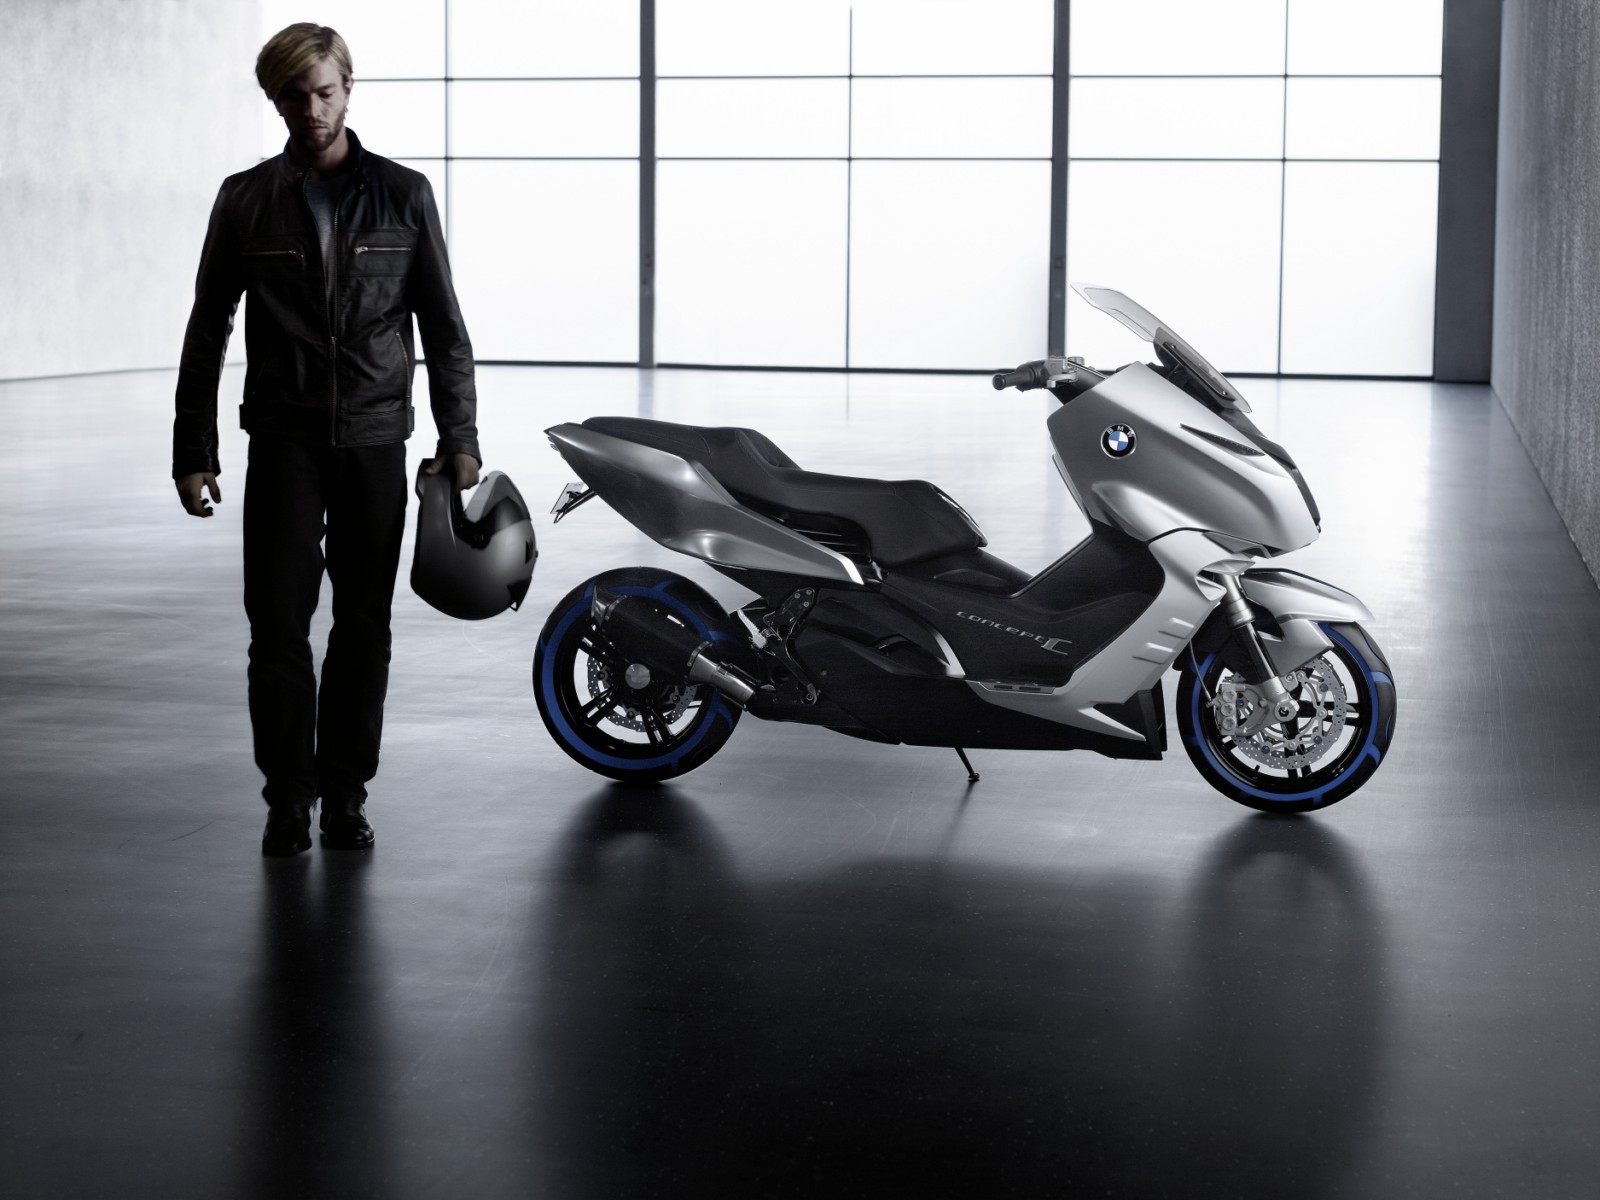 BMW Concept C este dotat cu un motor termic in doi cilindri, cuplat la o cutie CVT